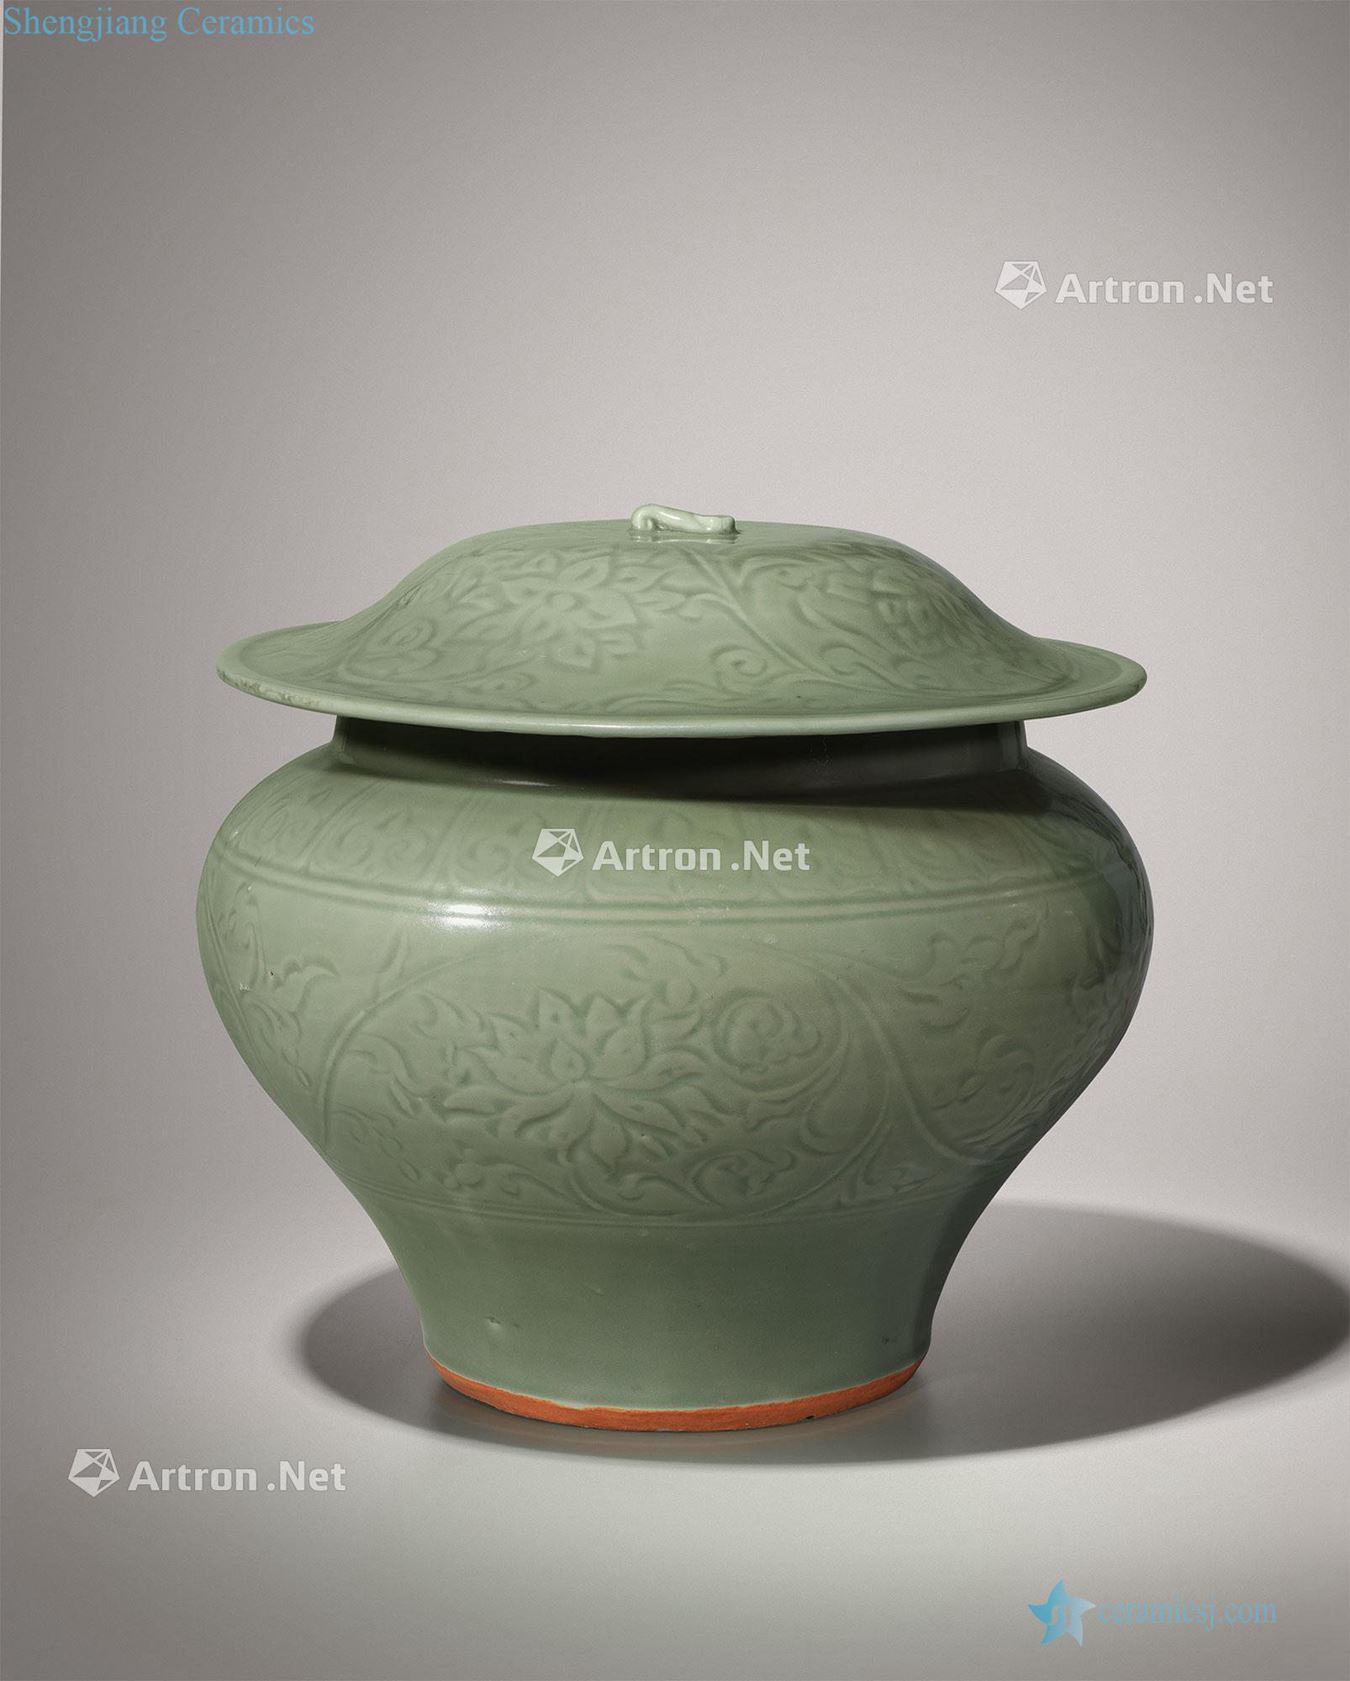 yuan Longquan green glaze dark moment cover large pot lotus flower grain lotus leaf